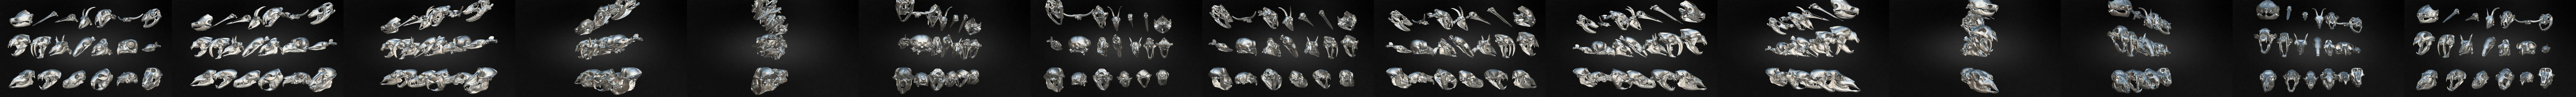 Squelettes d'animaux HD modèle 3D $149 - .obj .unknown .max - Free3D